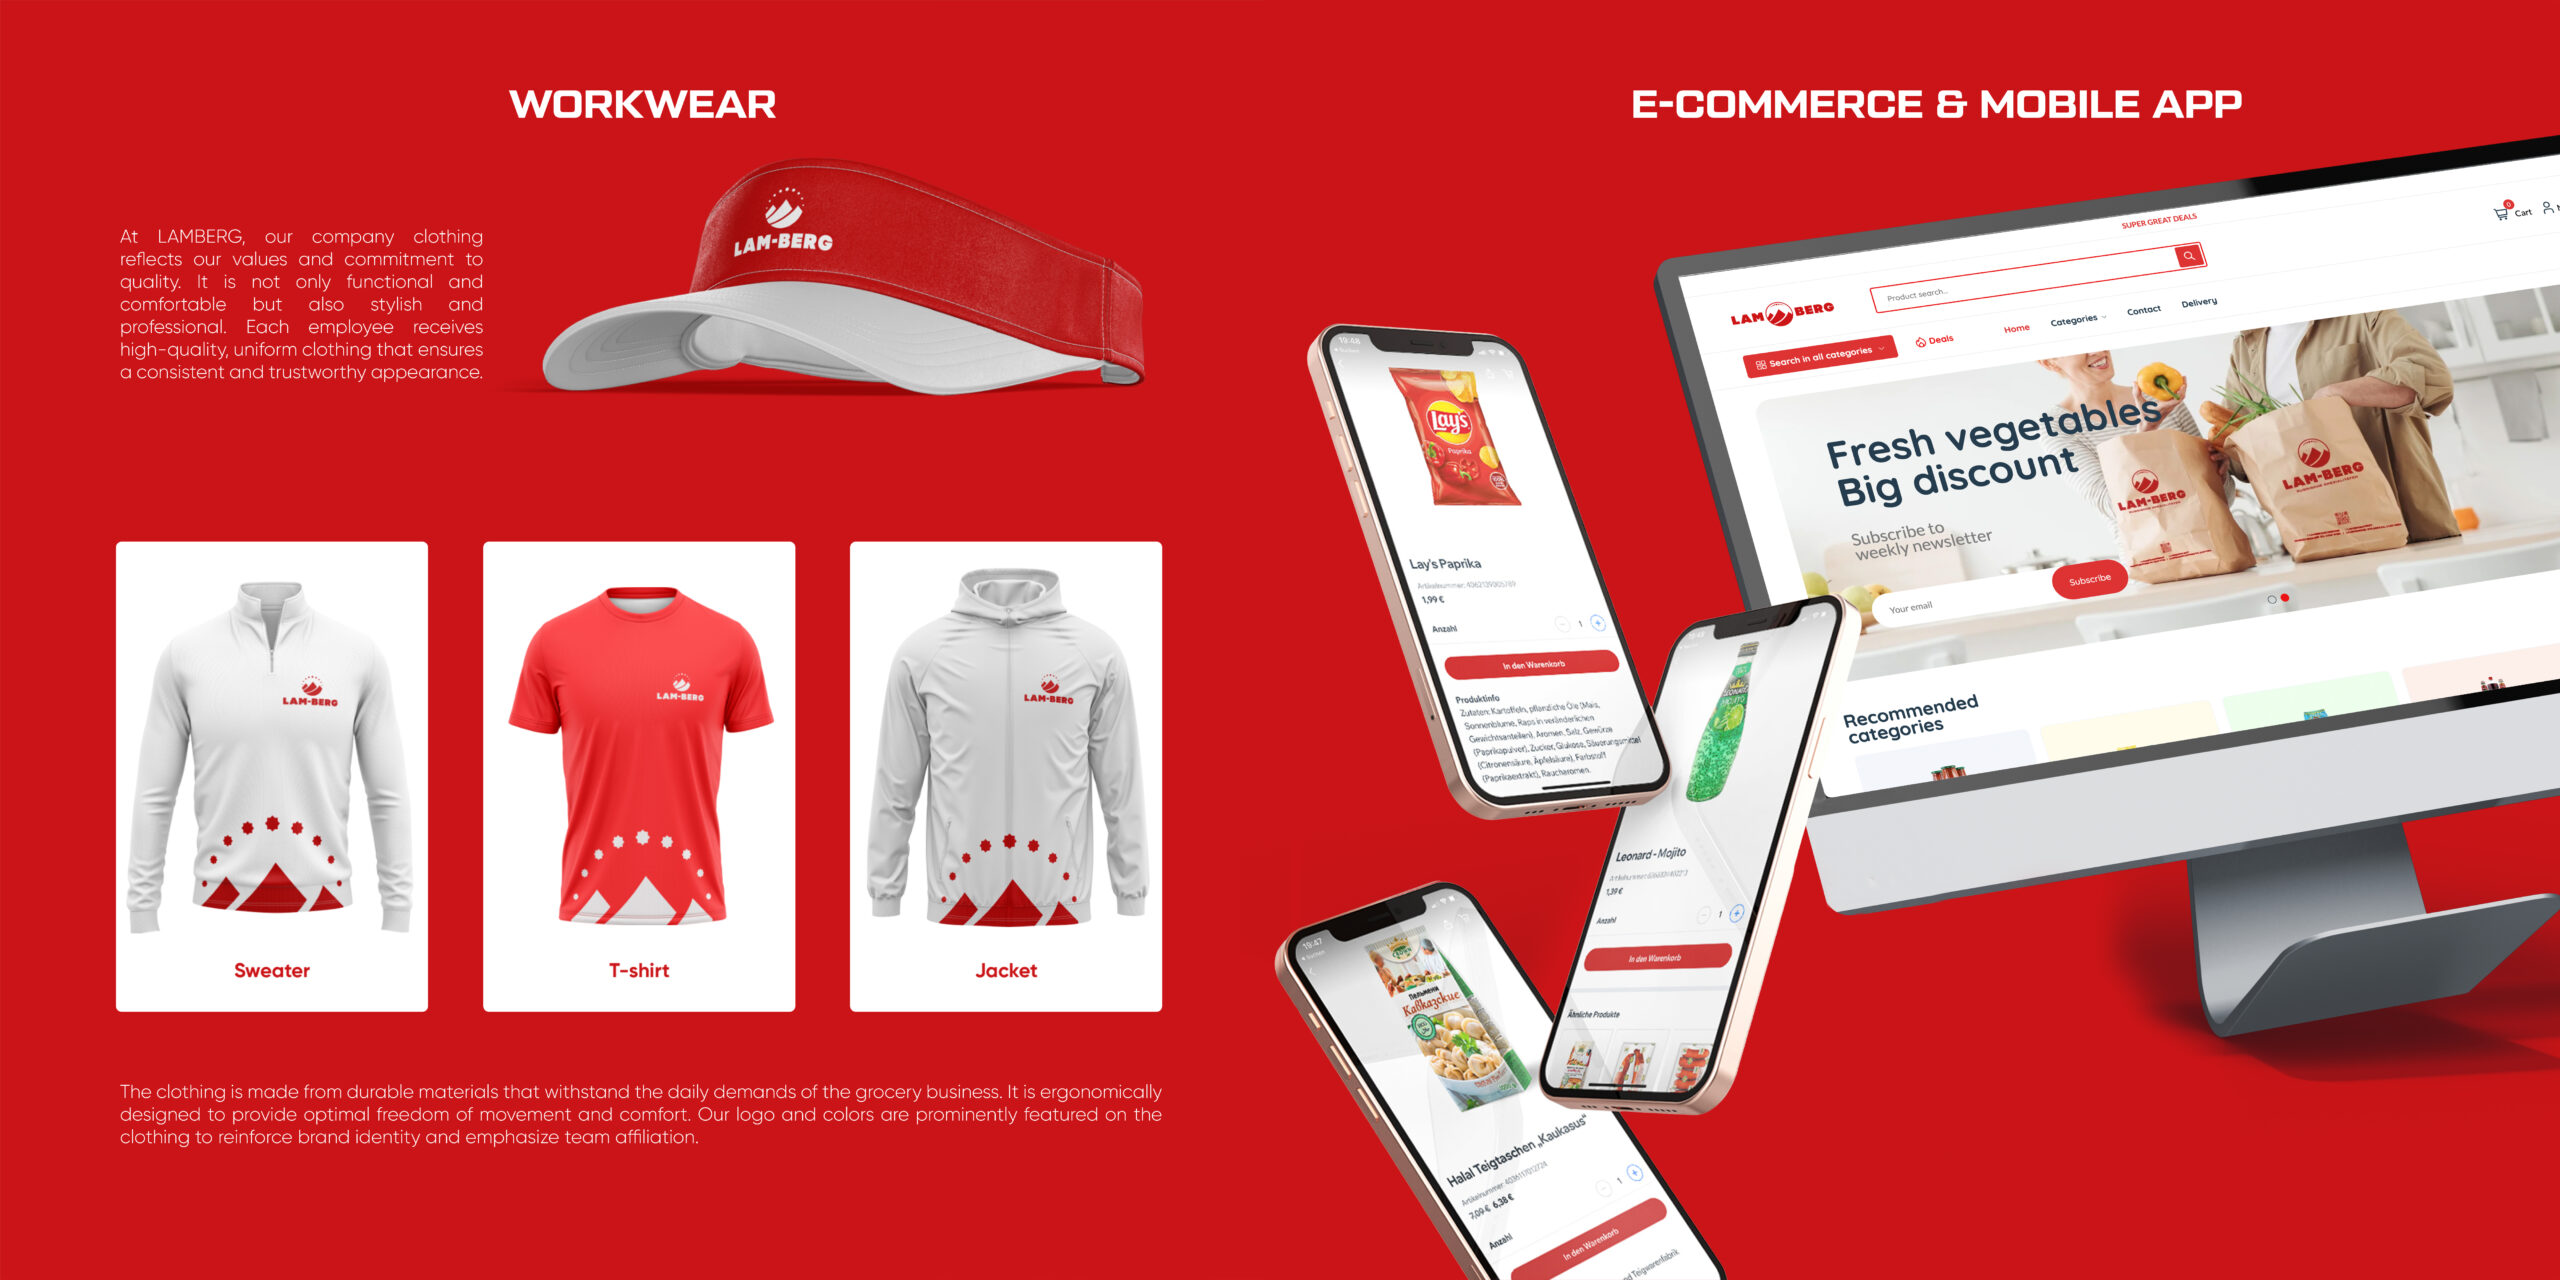 Lamberg Arbeitskleidung zeigt Uniformbekleidung einschließlich einer Kappe, einem Pullover, einem T-Shirt und einer Jacke, die für Langlebigkeit und Komfort entworfen wurden. Das Bild hebt auch die E-Commerce- und Mobile-App-Oberfläche hervor und betont die kohärente Markenstrategie des Unternehmens.